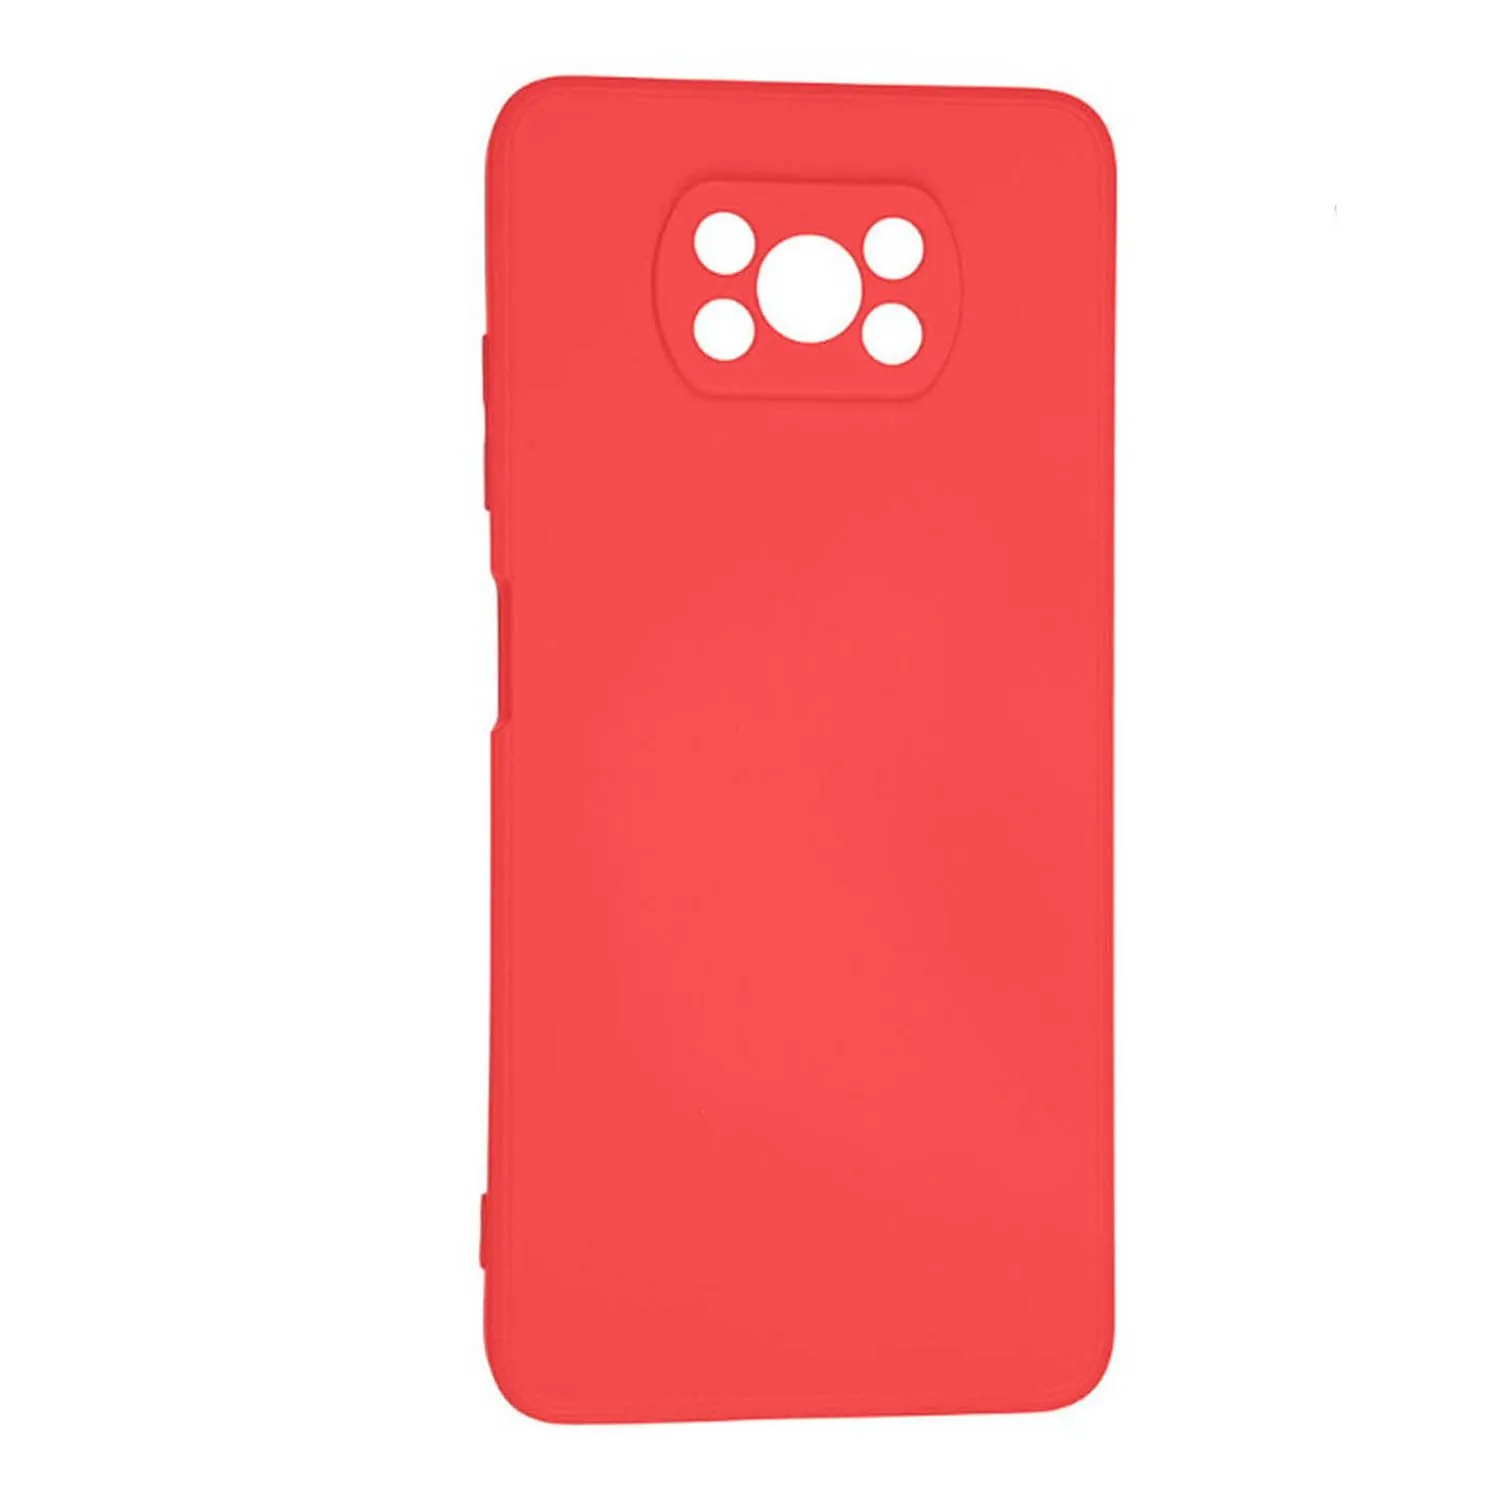 Силиконовый чехол FASHION CASE Xiaomi POCO X3 (красный)